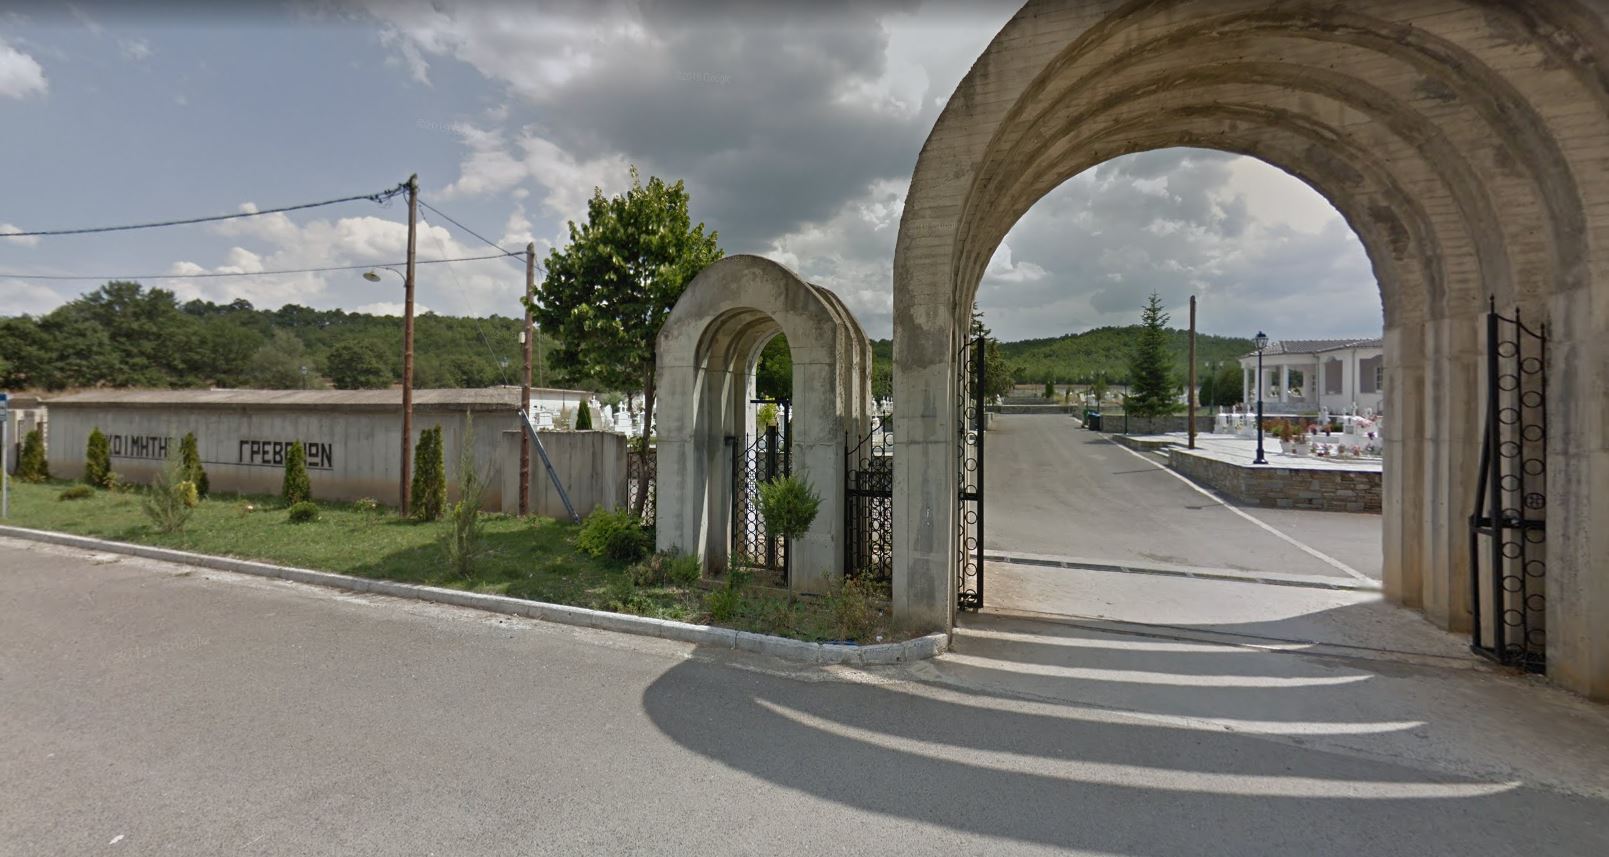 Δήμος Γρεβενών: Αναγκαστικές εκταφές προγραμματίζονται στο Δημοτικό Κοιμητήριο λόγω έλλειψης χώρου